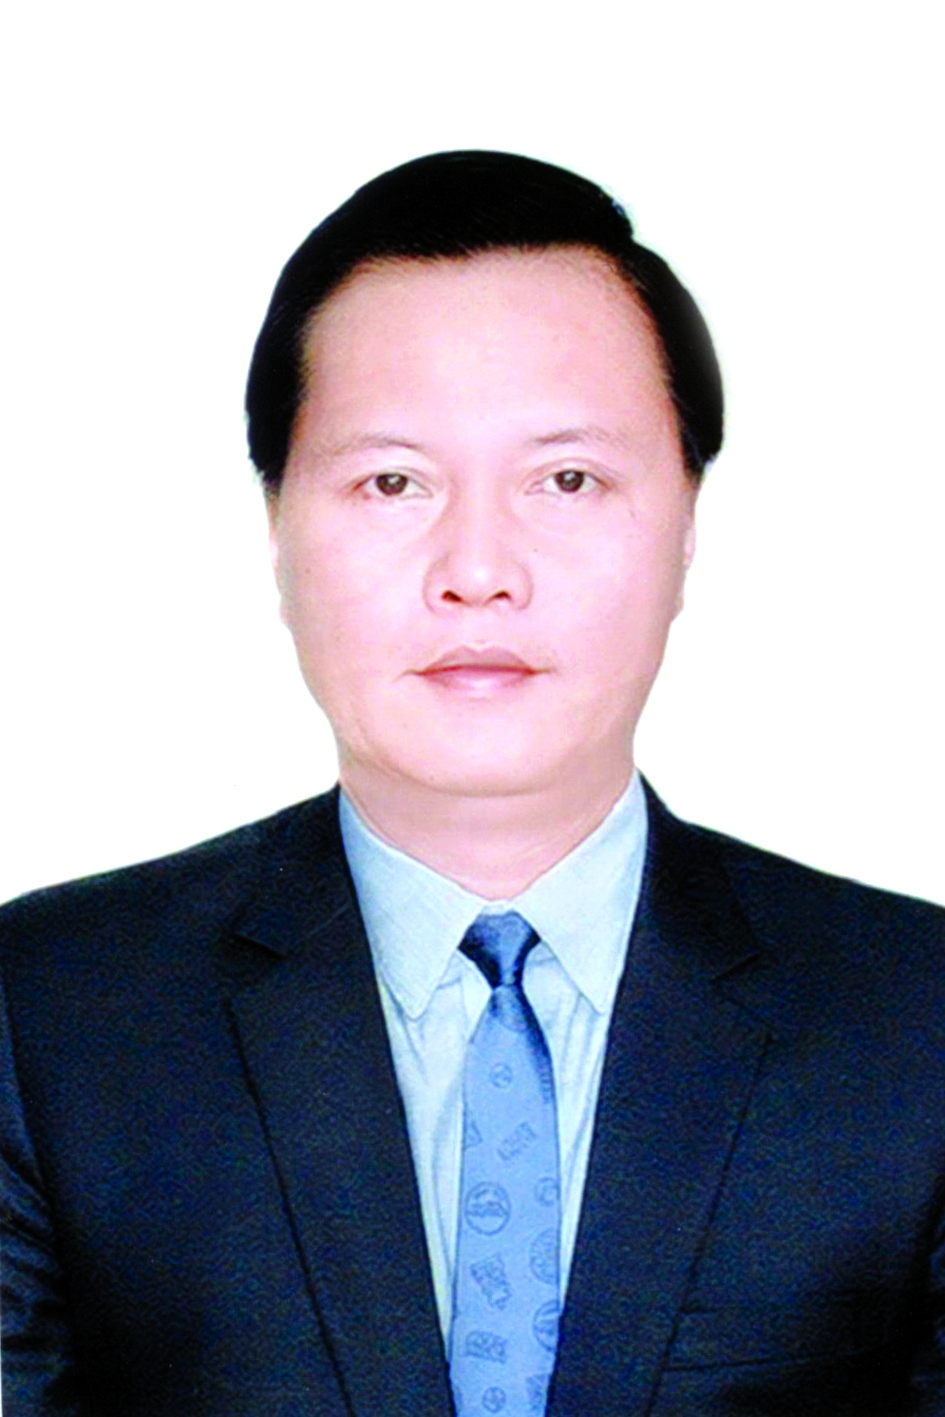 Chương trình hành động của Bí thư Huyện ủy Đan Phượng Trần Đức Hải, ứng cử viên đại biểu HĐND TP Hà Nội nhiệm kỳ 2021 - 2026 - Ảnh 1